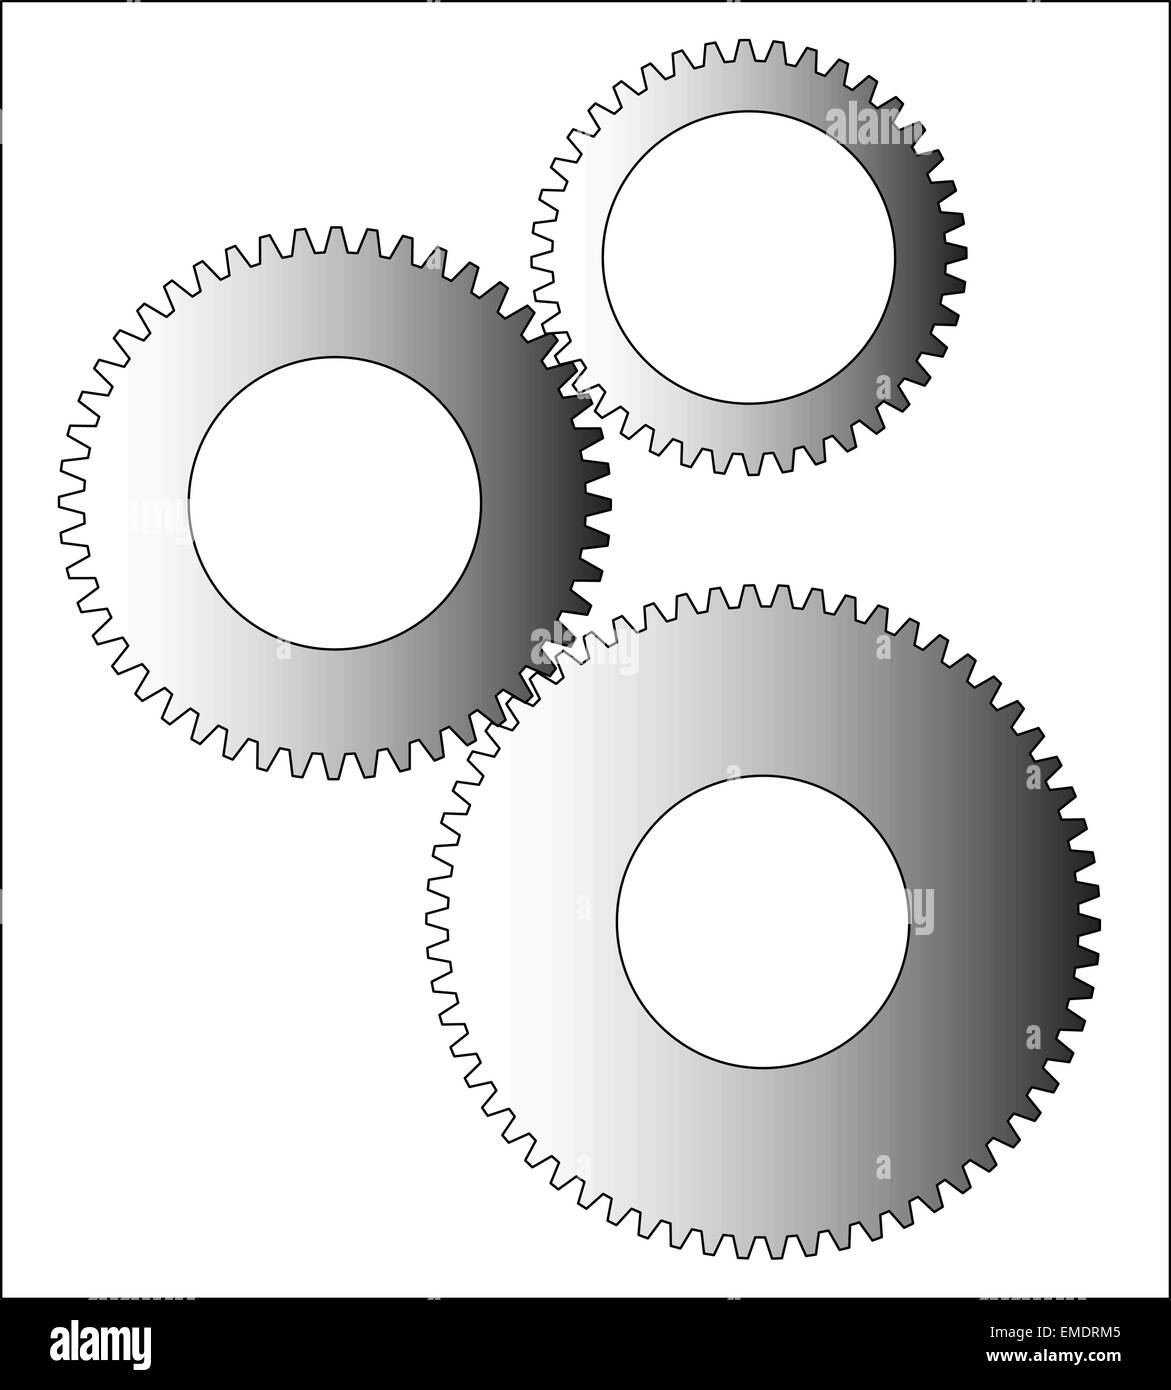 Metall Zahnräder und Ritzel Vektor. Zahnradsymbol flache Bauform.  Mechanismus räder Logo. Zahnrad Konzept Vorlage Stock-Vektorgrafik - Alamy